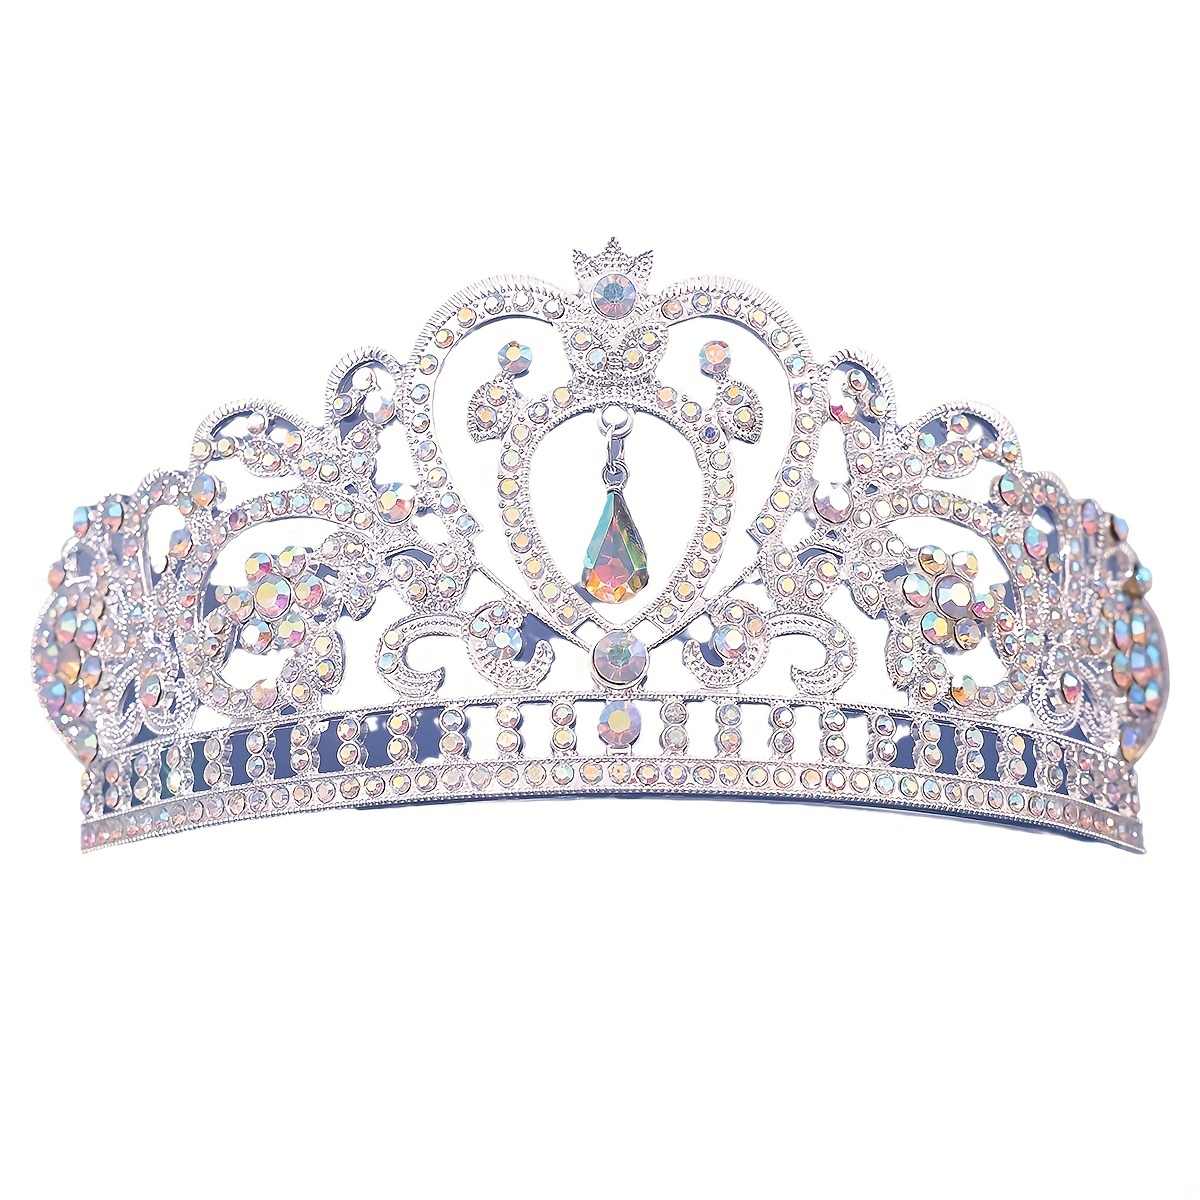 シルバークリスタルの王冠とティアラ コーム付き 女の子や女性用 女王 